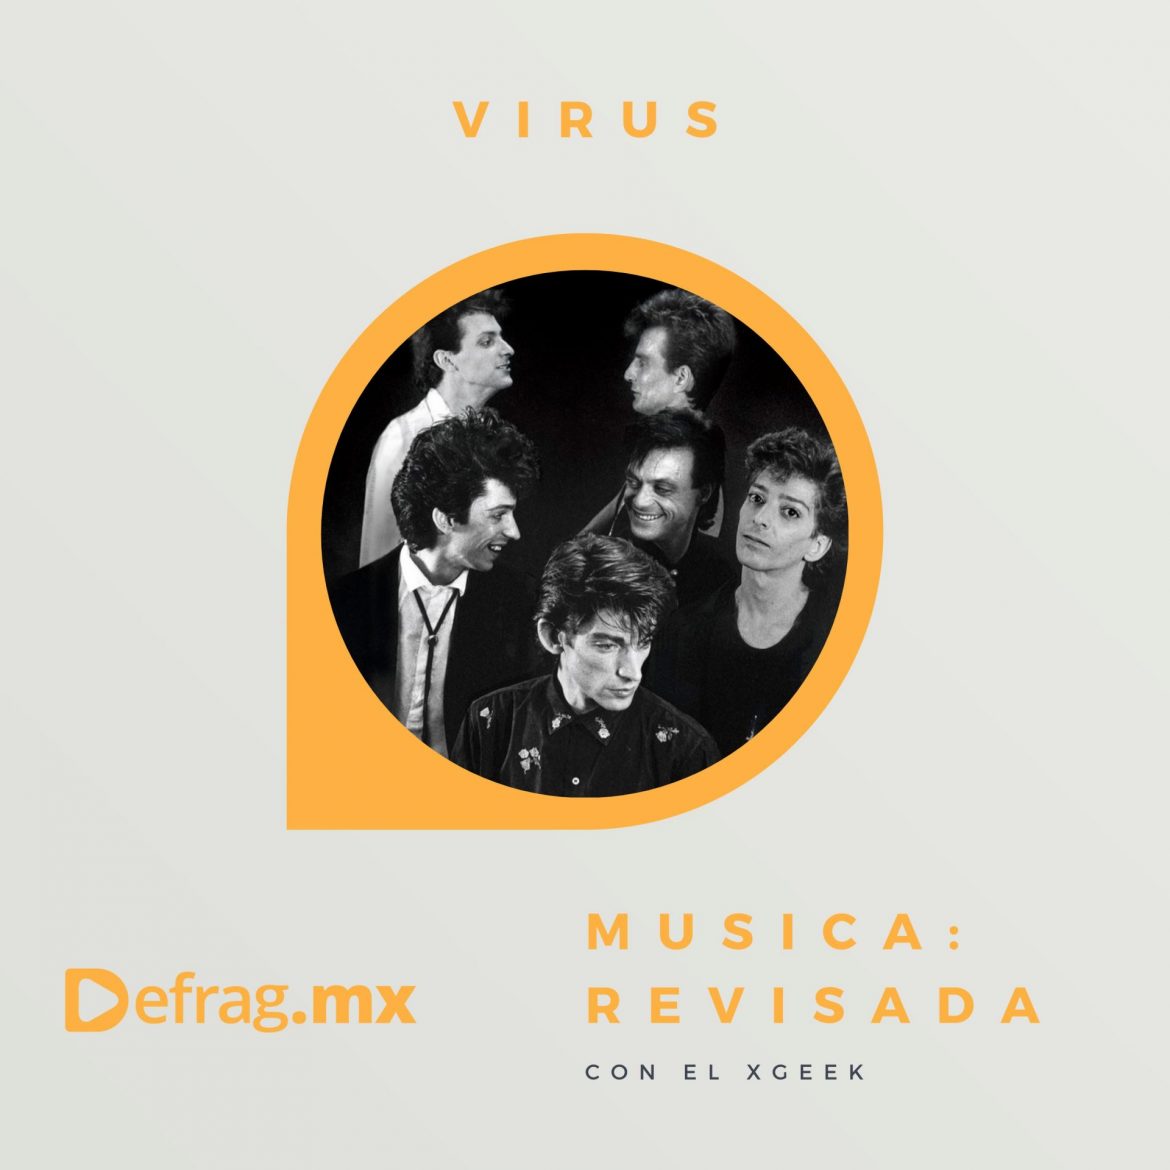 Defrag.mx Podcast Música Revisada Virus Encuentro en el Río